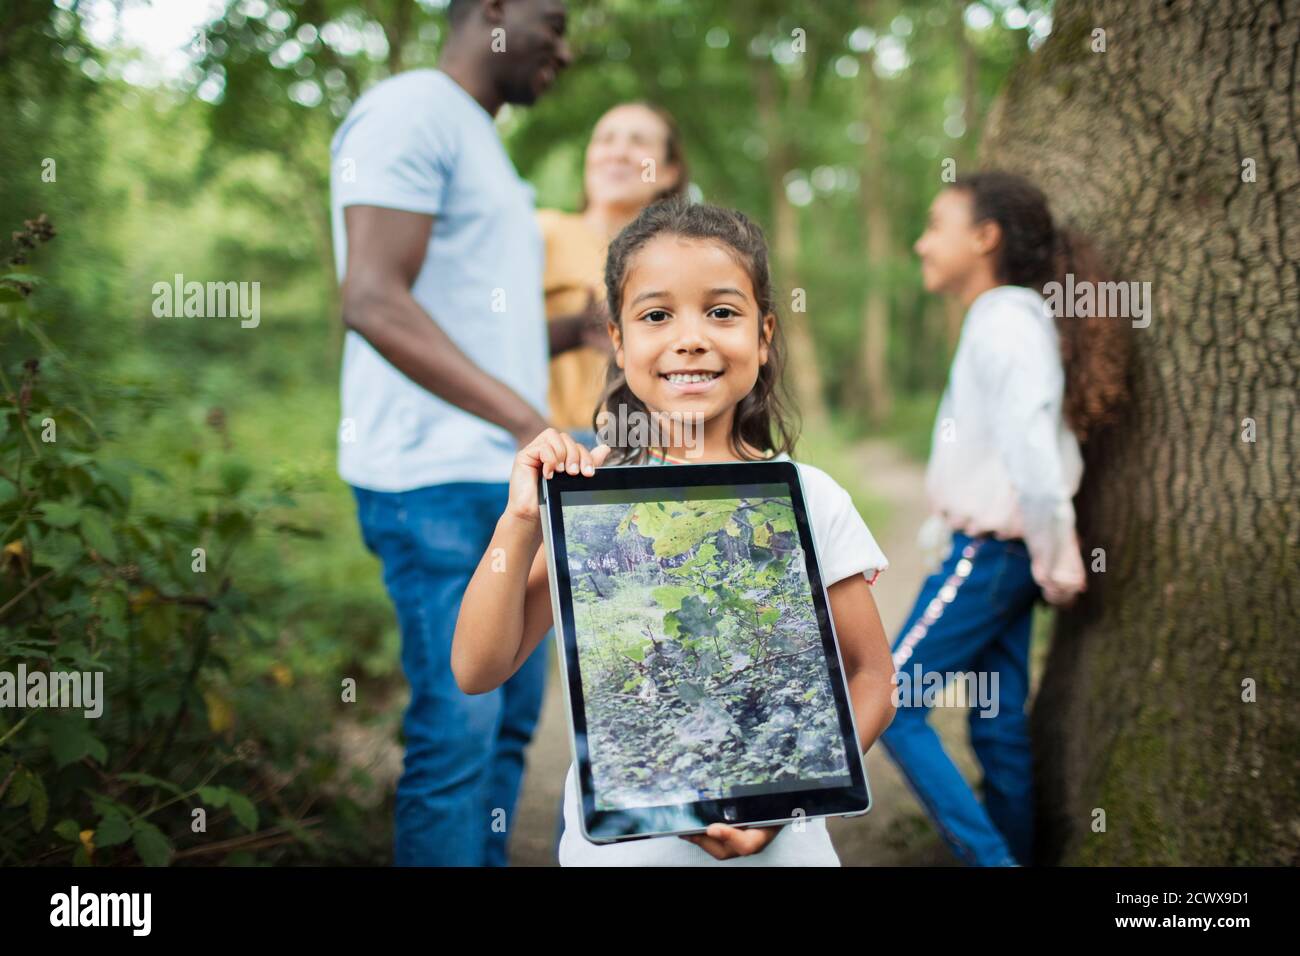 Retrato niña sosteniendo tableta digital con fotografía de planta en bosques Foto de stock